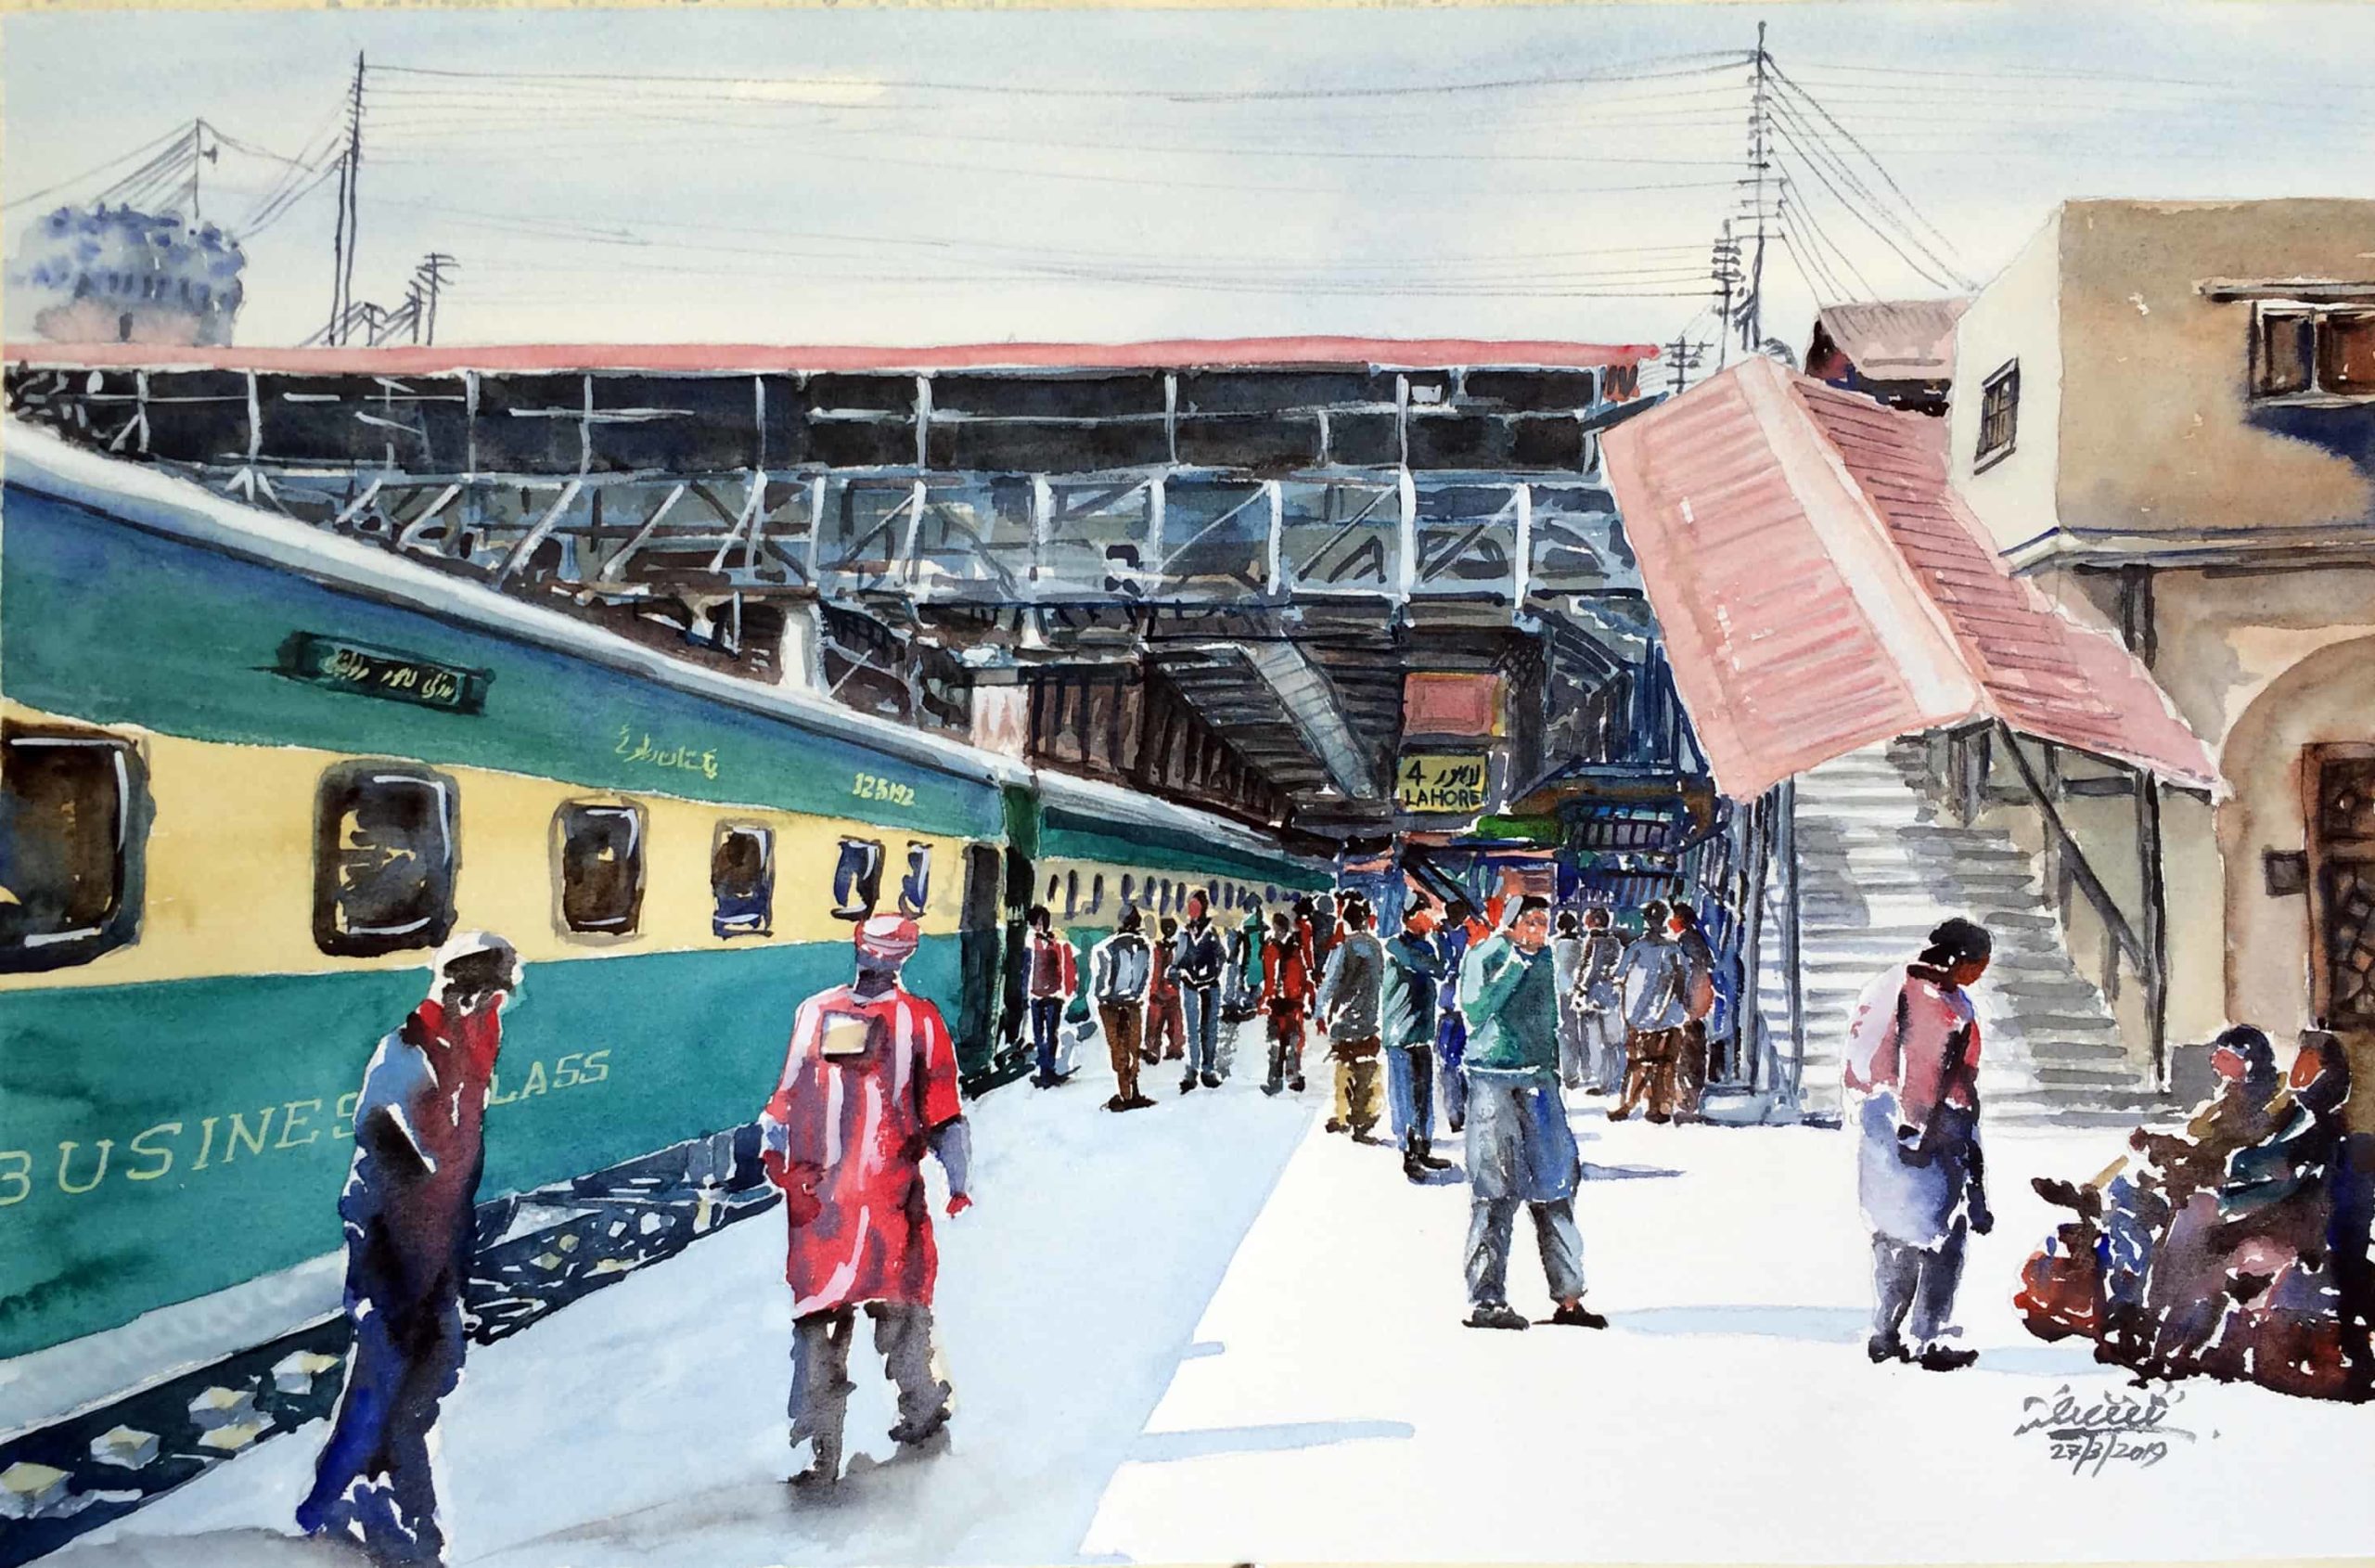 Lahore Railway Station 1Lahore Railway Station 2Lahore Railway Station 3Lahore Railway Station 4